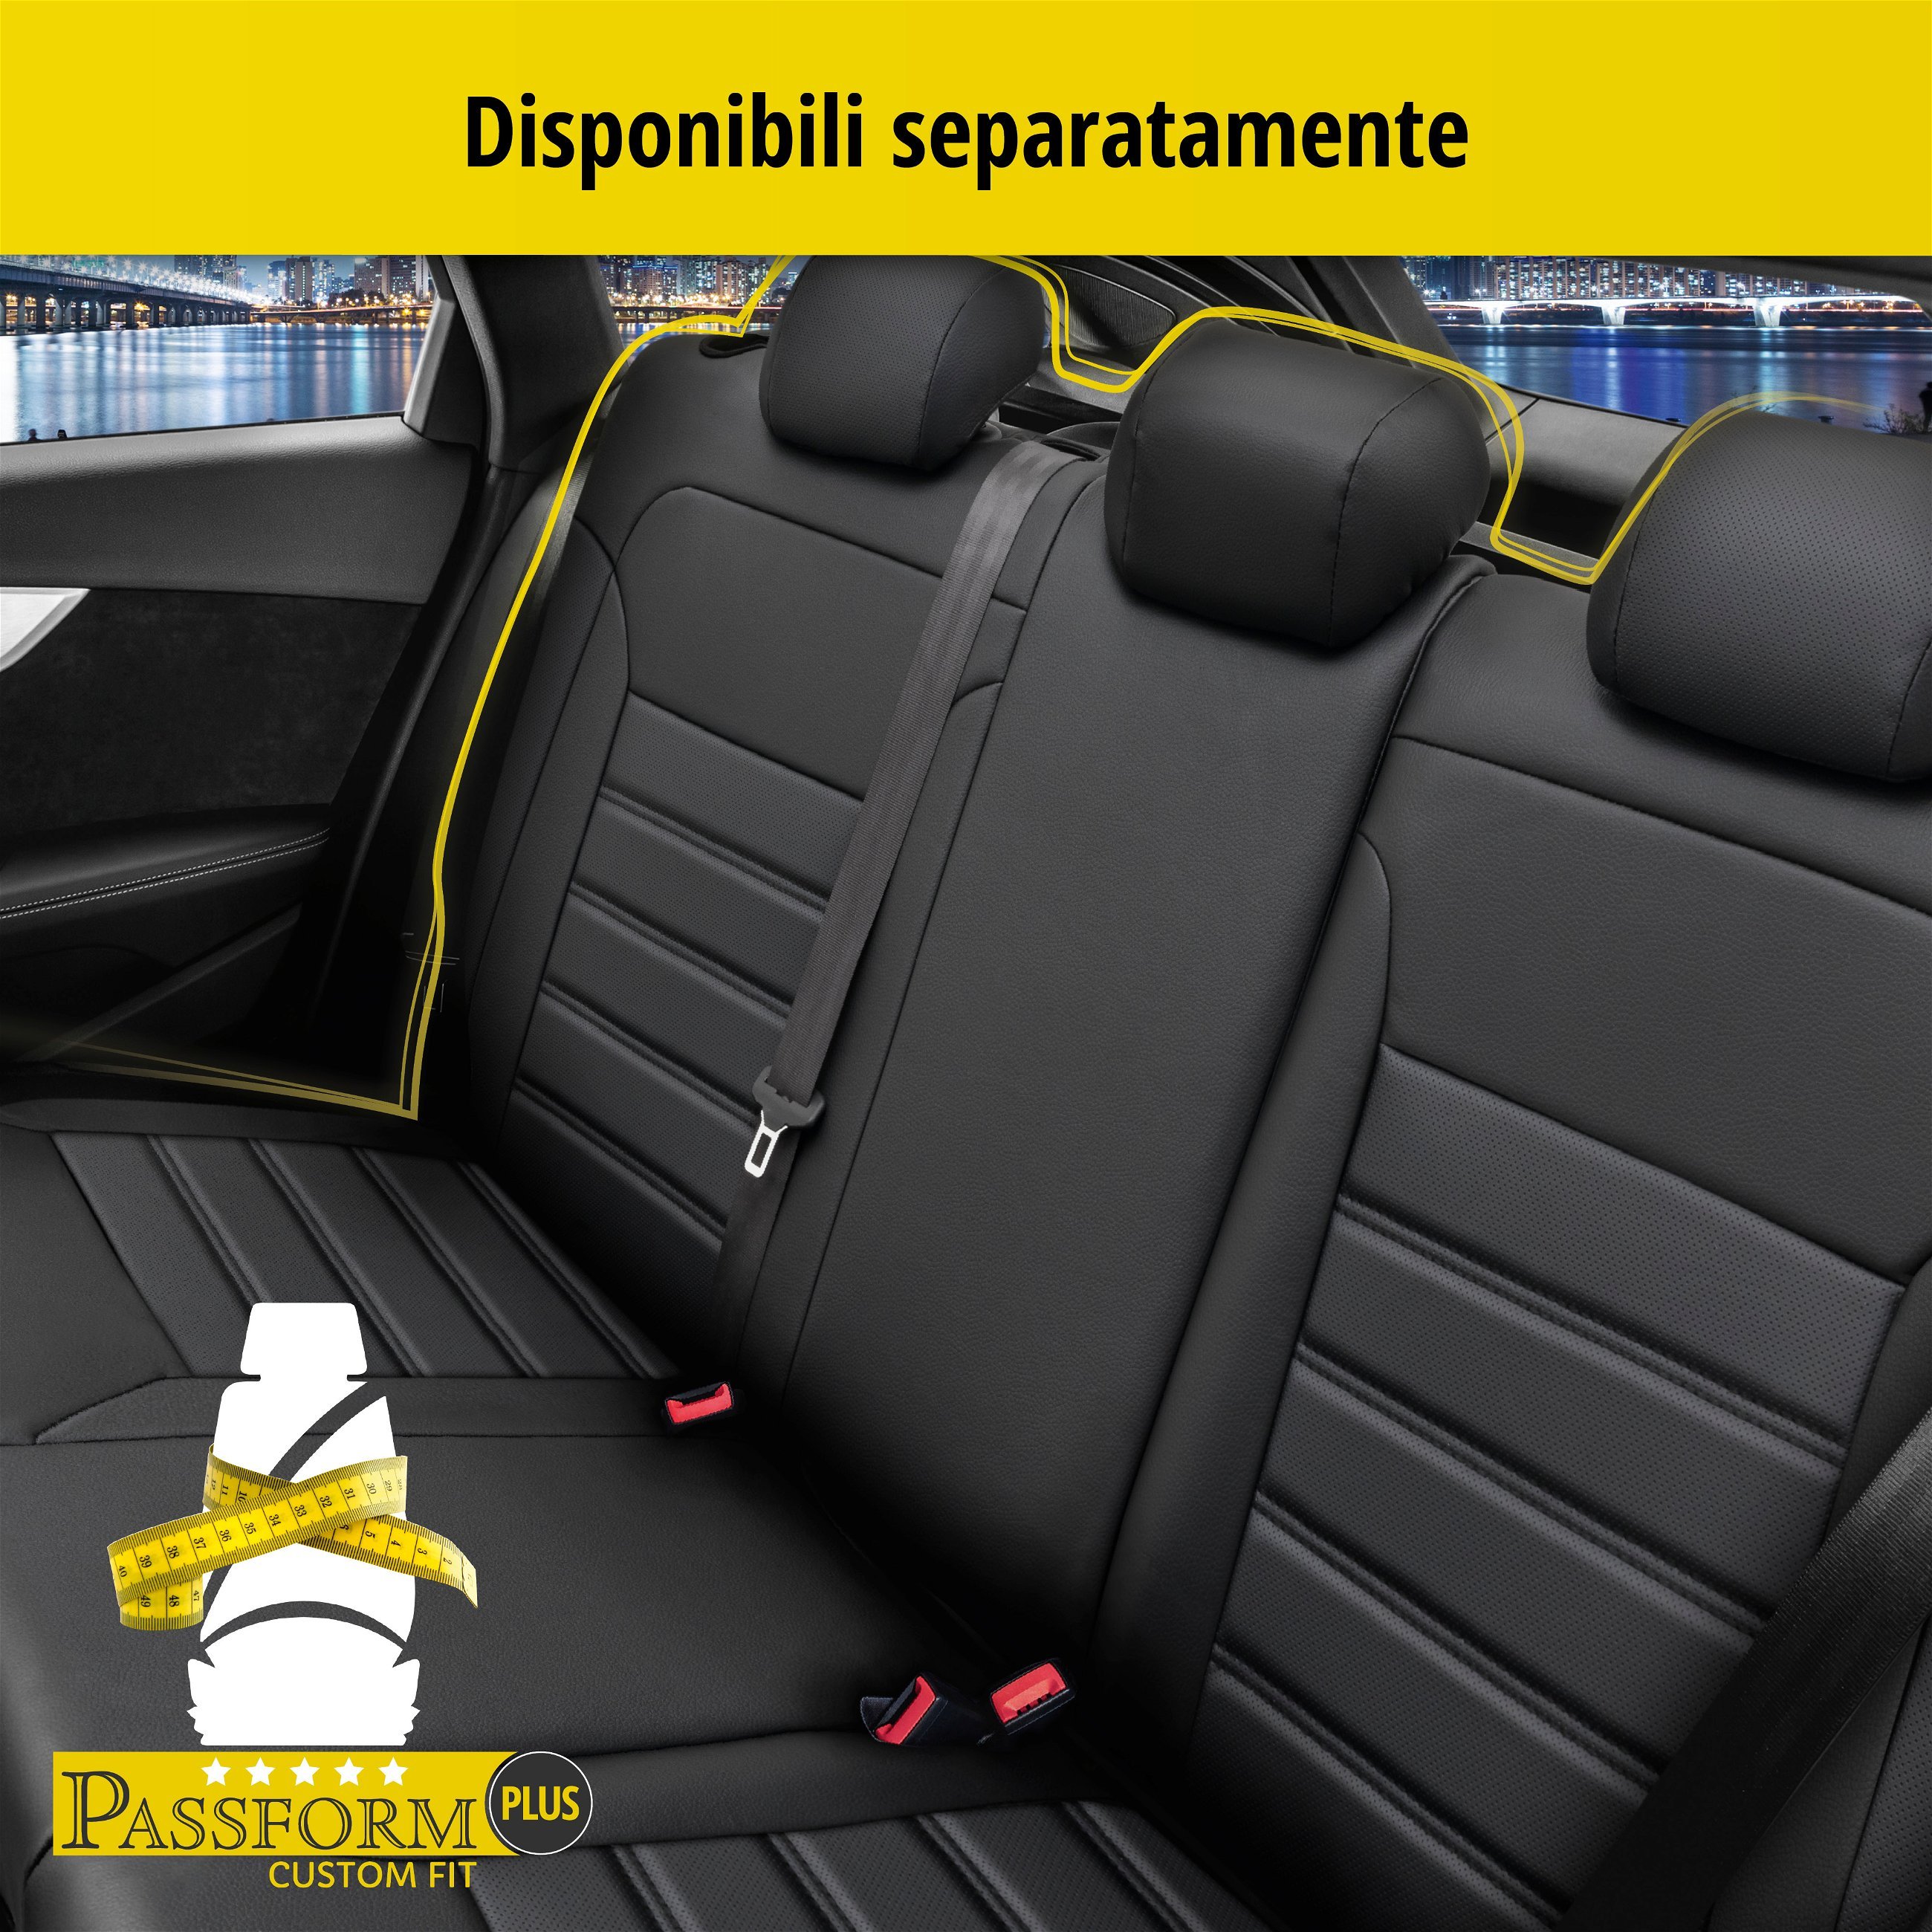 Coprisedili Robusto per Opel Corsa D (S07) 07/2006-08/2014, 2 coprisedili singoli per sedili normali